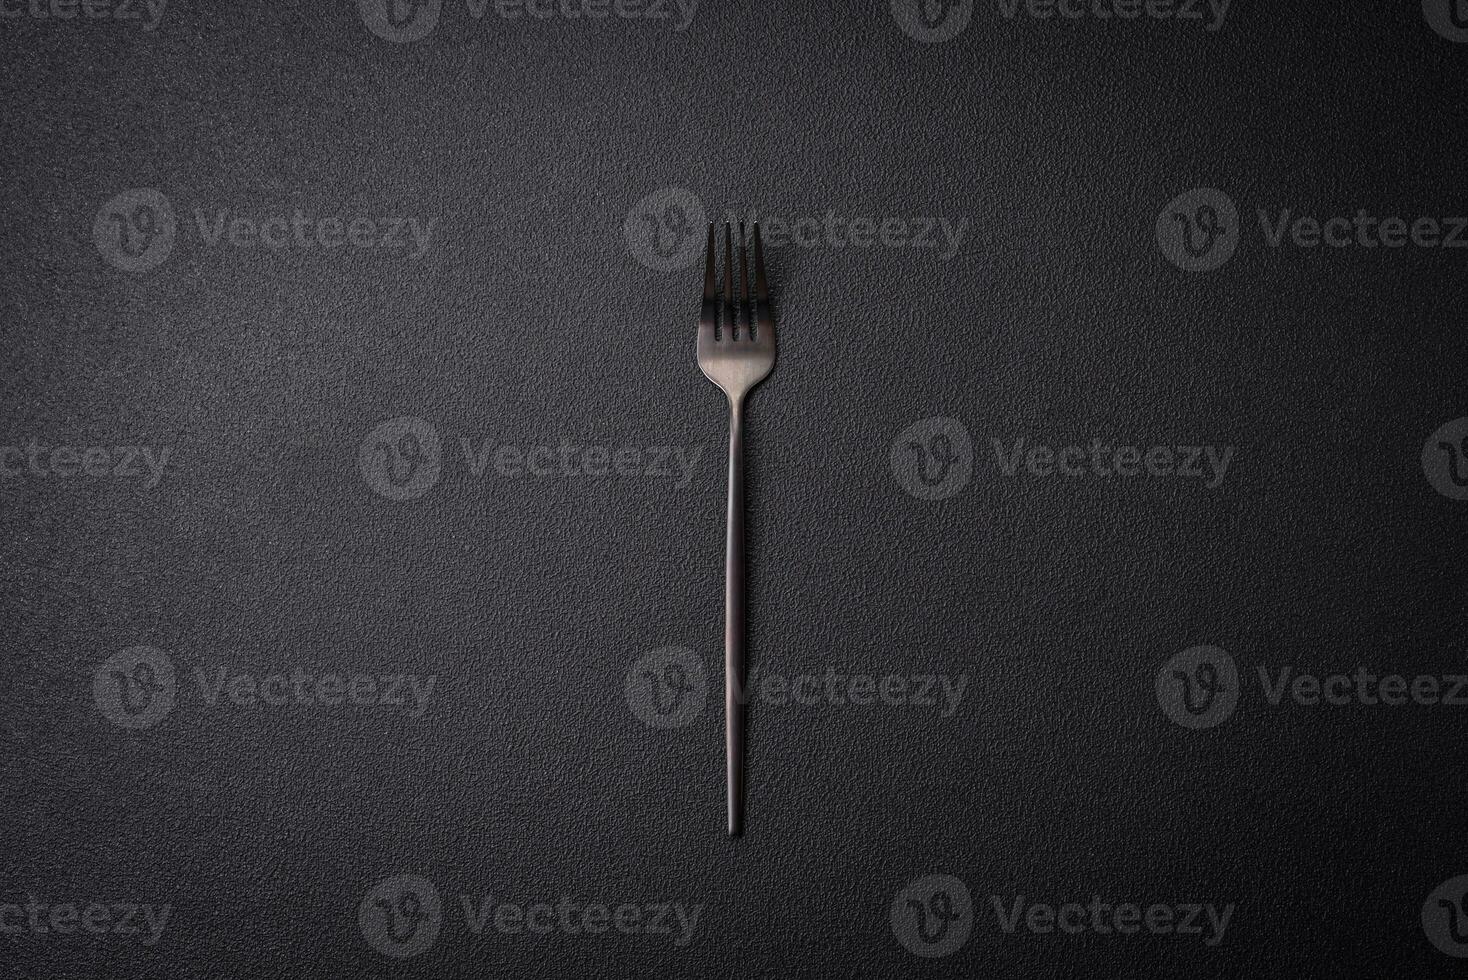 keuken vork gemaakt van staal Aan een donker getextureerde achtergrond foto